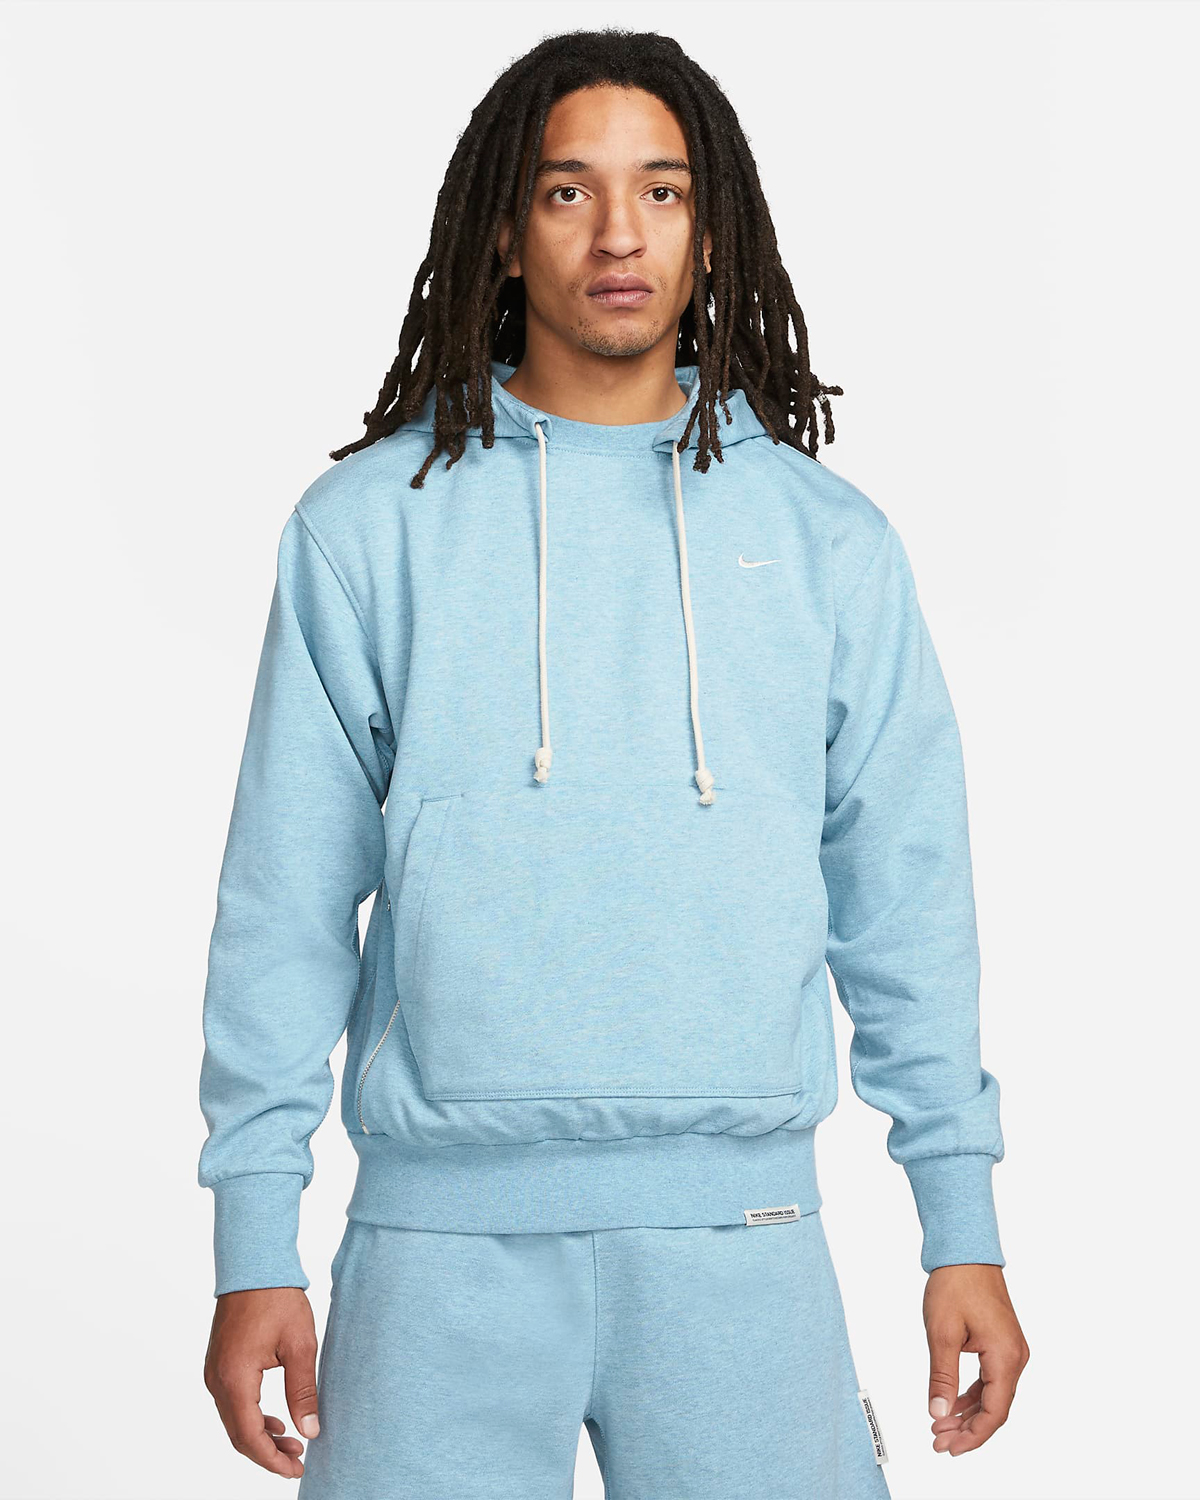 nike-standard-issue-hoodie-worn-blue